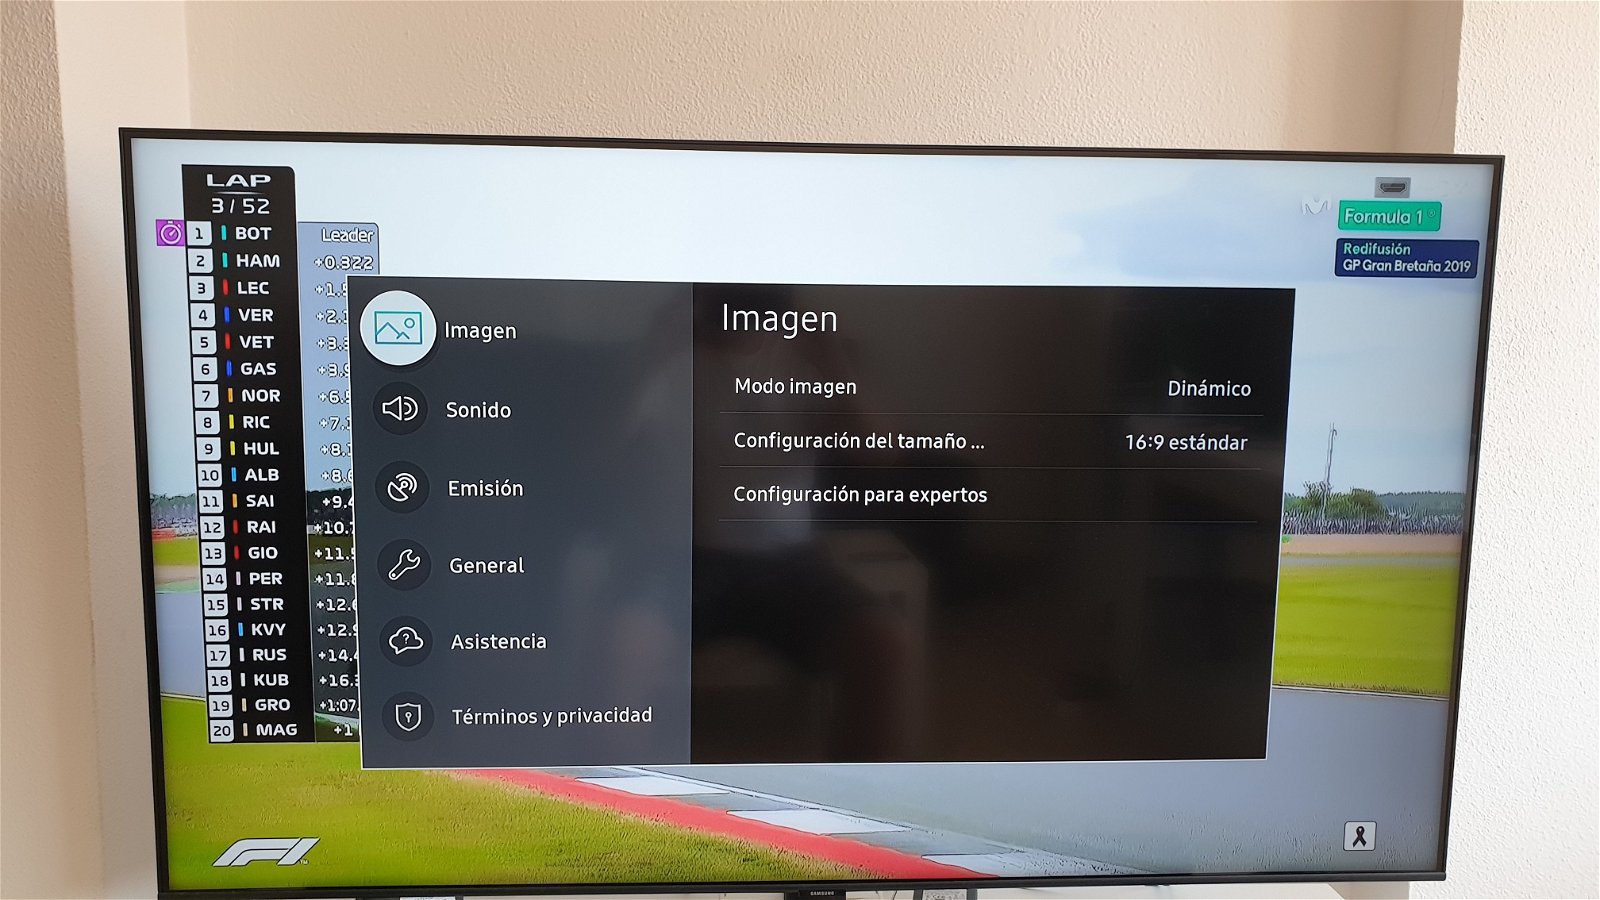 Menú de configuración de imagen de un televisor Samsung.